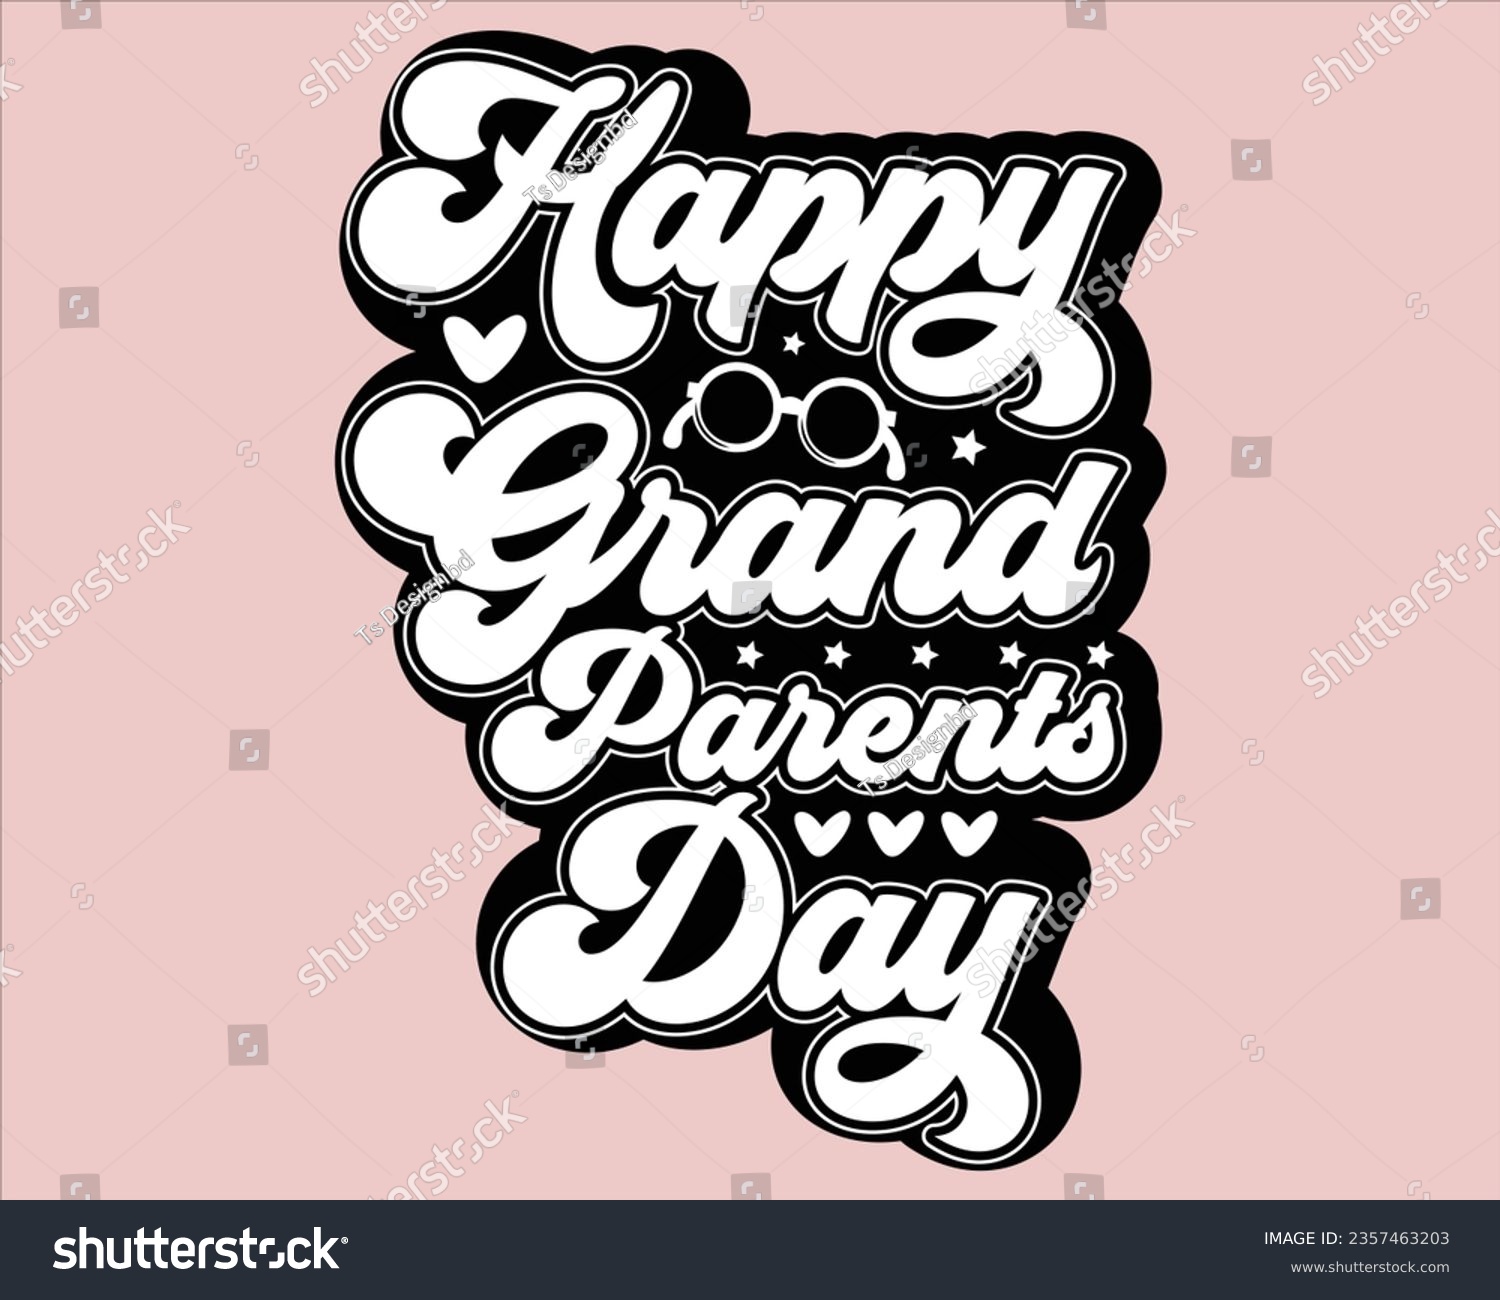 SVG of Grandparents Day Svg Design,grandparents T Shirt Design,Grandpa svg, Grandparents svg,Grandma svg,grandparents day Design,  svg